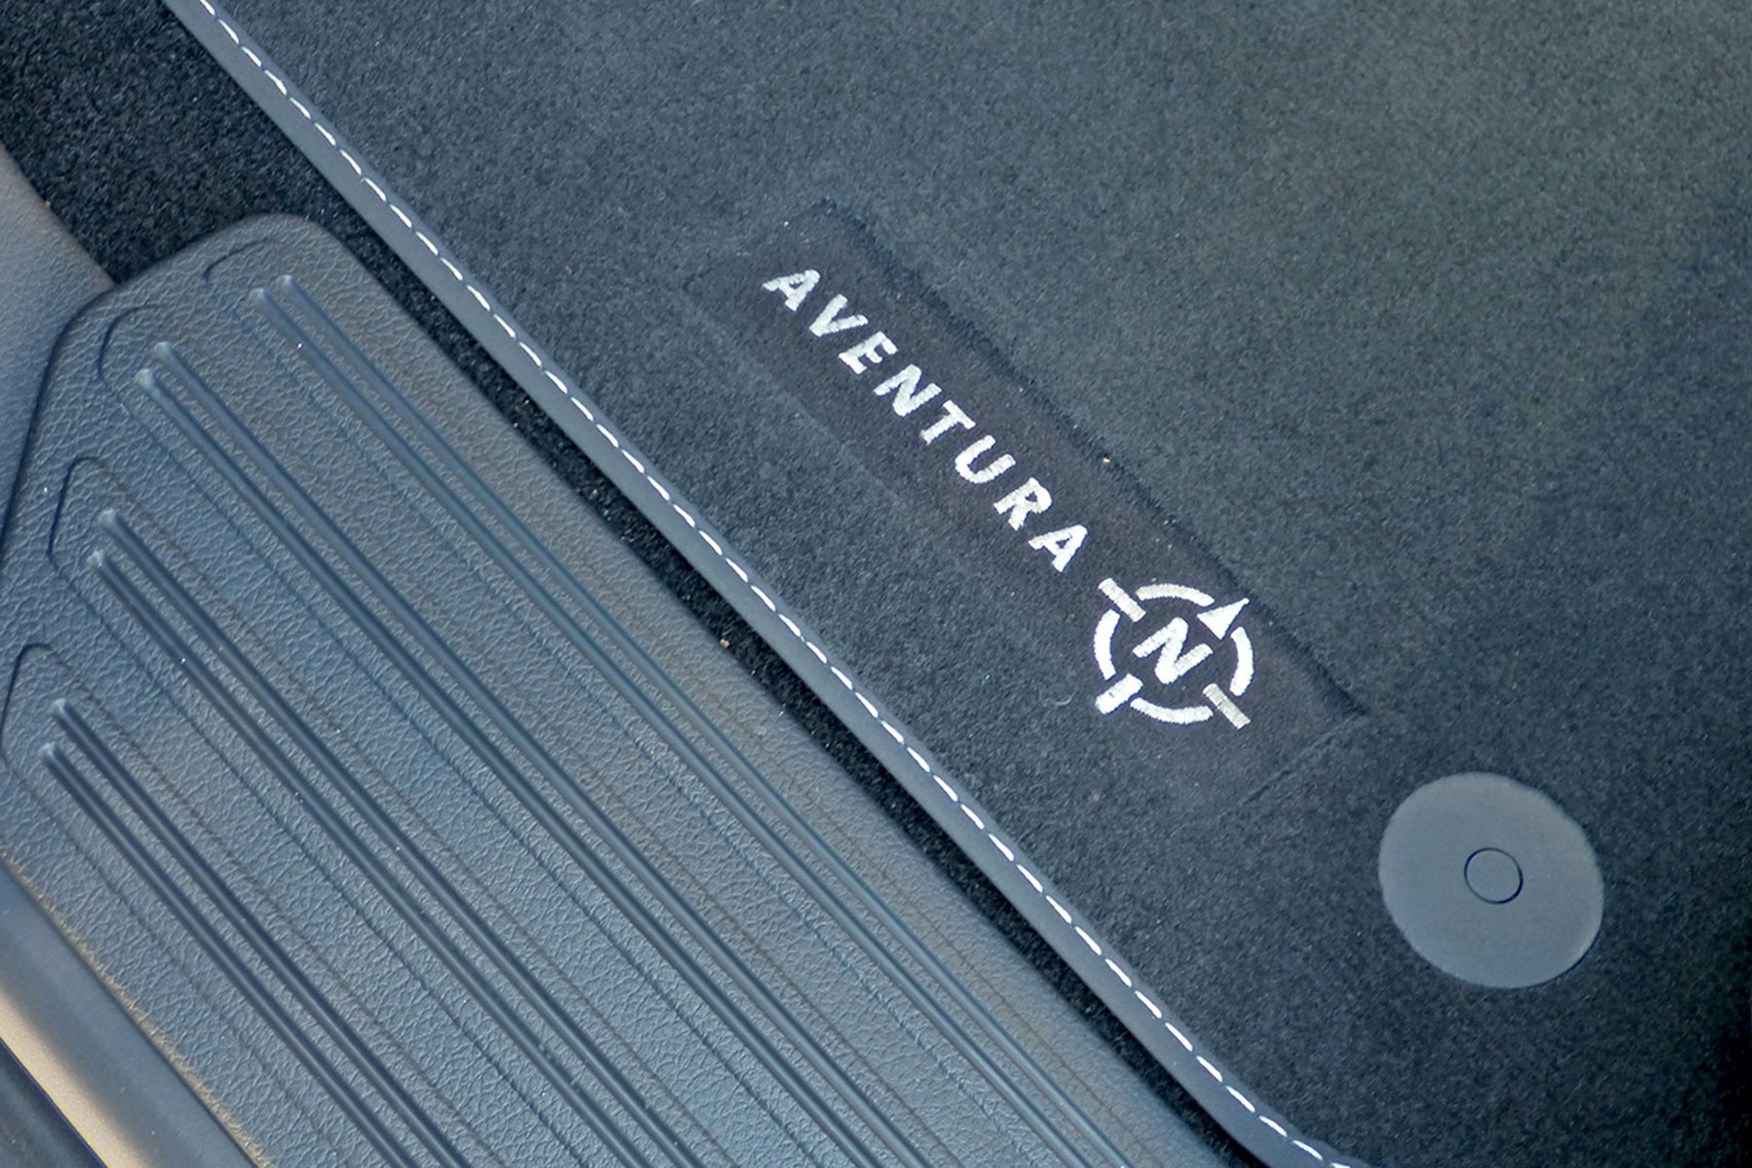 VW Amarok V6 Aventura 258hp review - bespoke floor mats